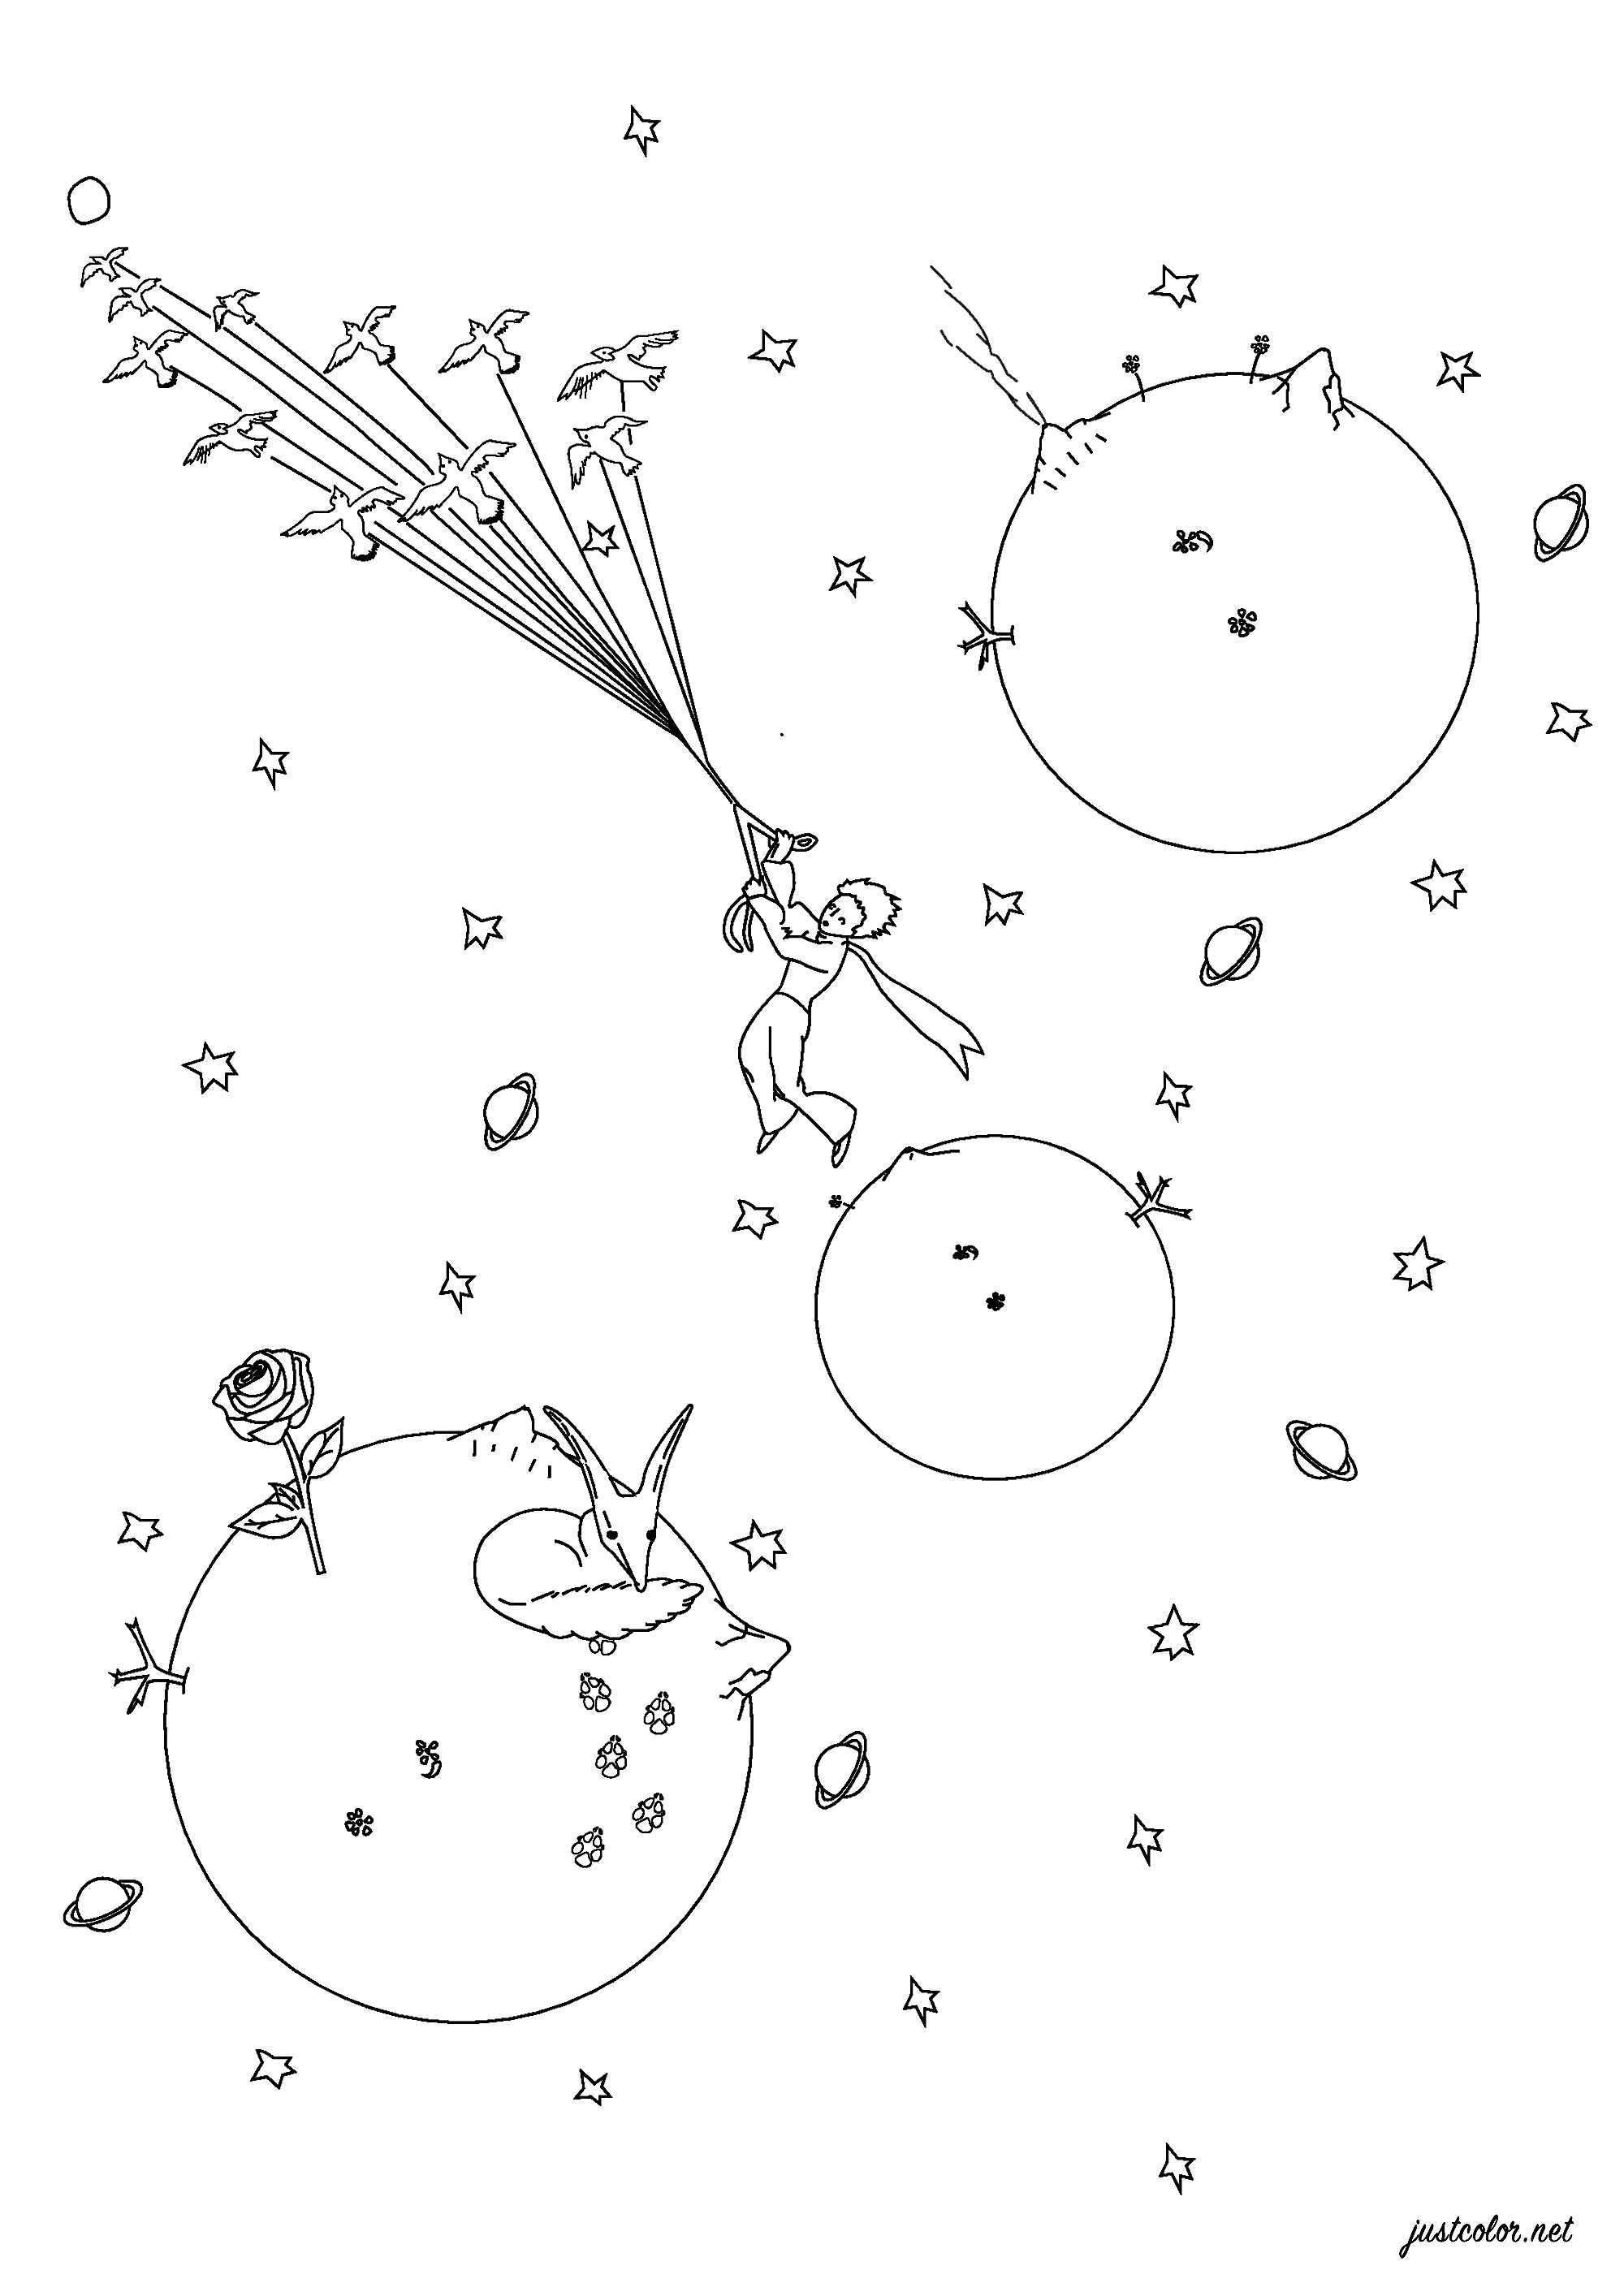 Página para colorear inspirada en El Principito de Antoine de Saint-Exupéry. Publicado por primera vez en 1943, El Principito es un cuento poético, con ilustraciones en acuarela del autor, en el que un piloto varado en el desierto conoce a un joven príncipe que visita la Tierra desde un diminuto asteroide.